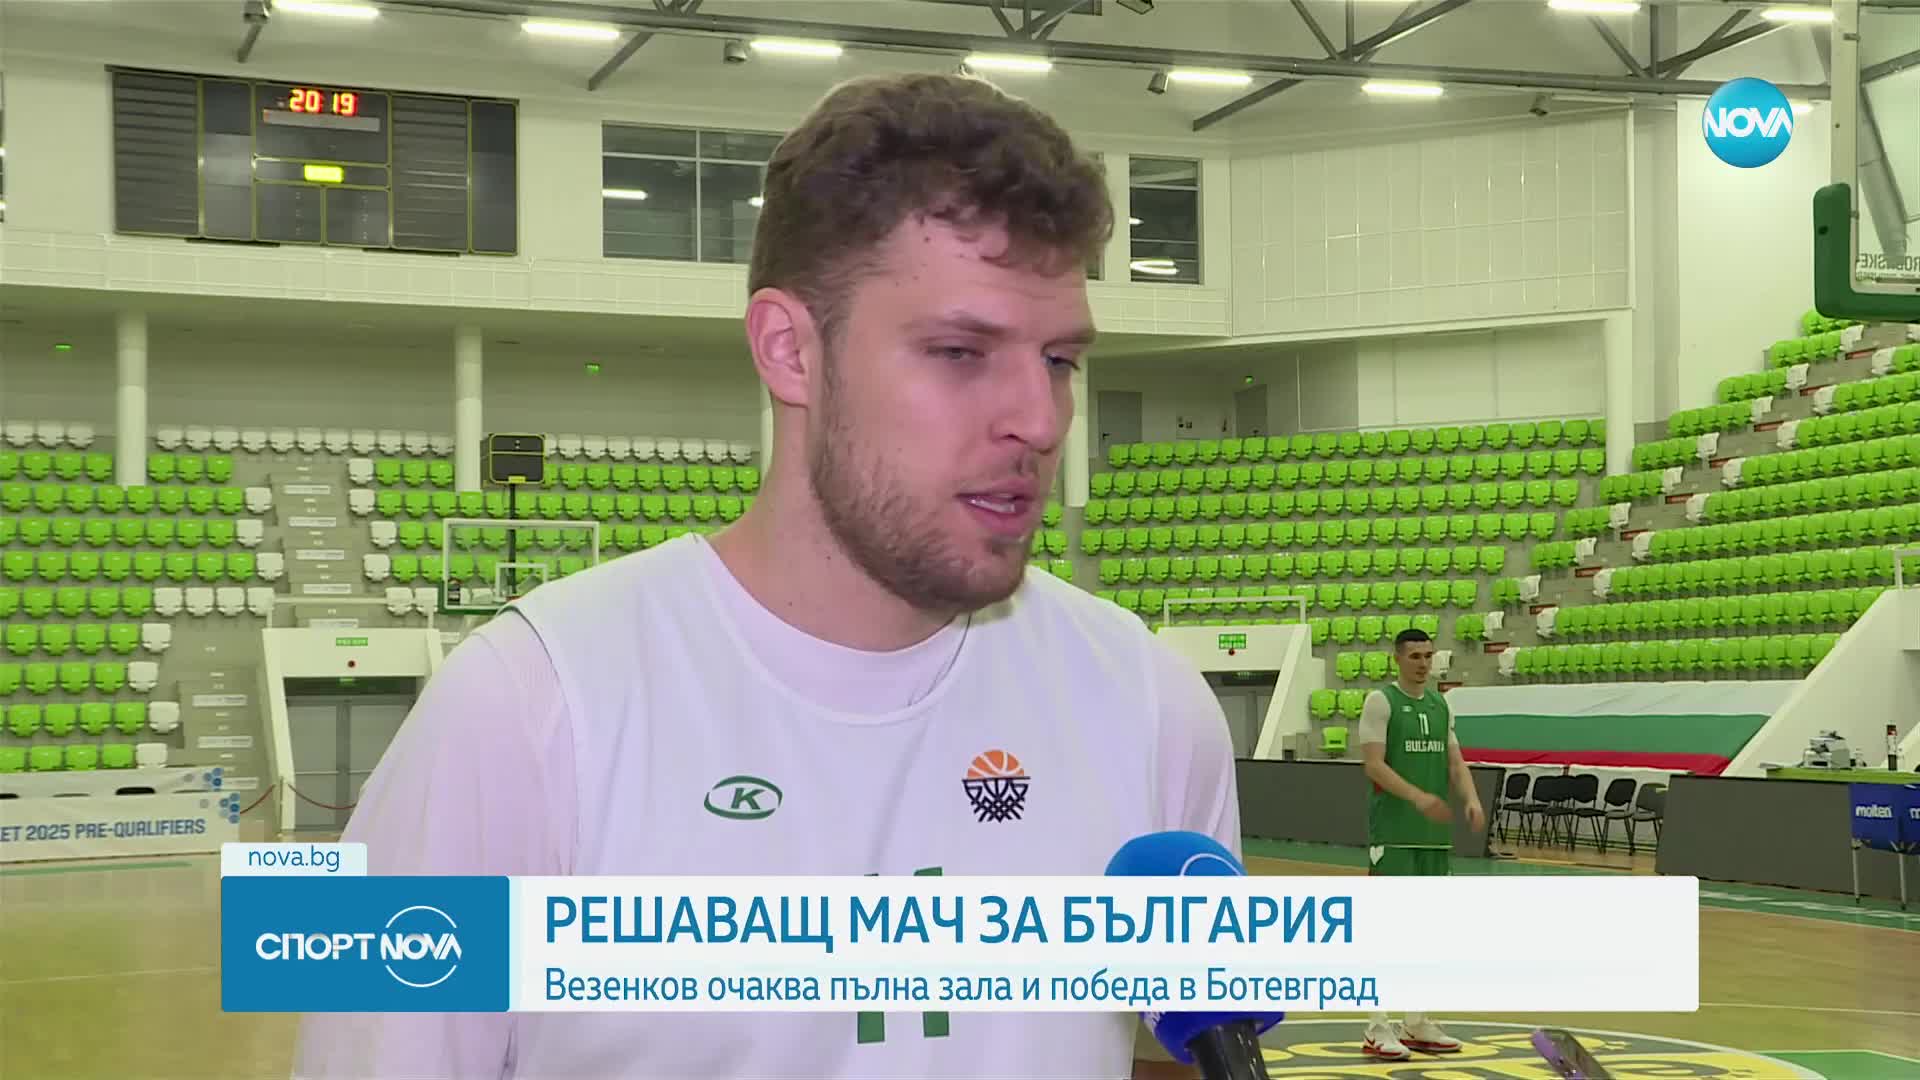 Решаващ мач за България, Везенков очаква пълна зала и победа в Ботевград